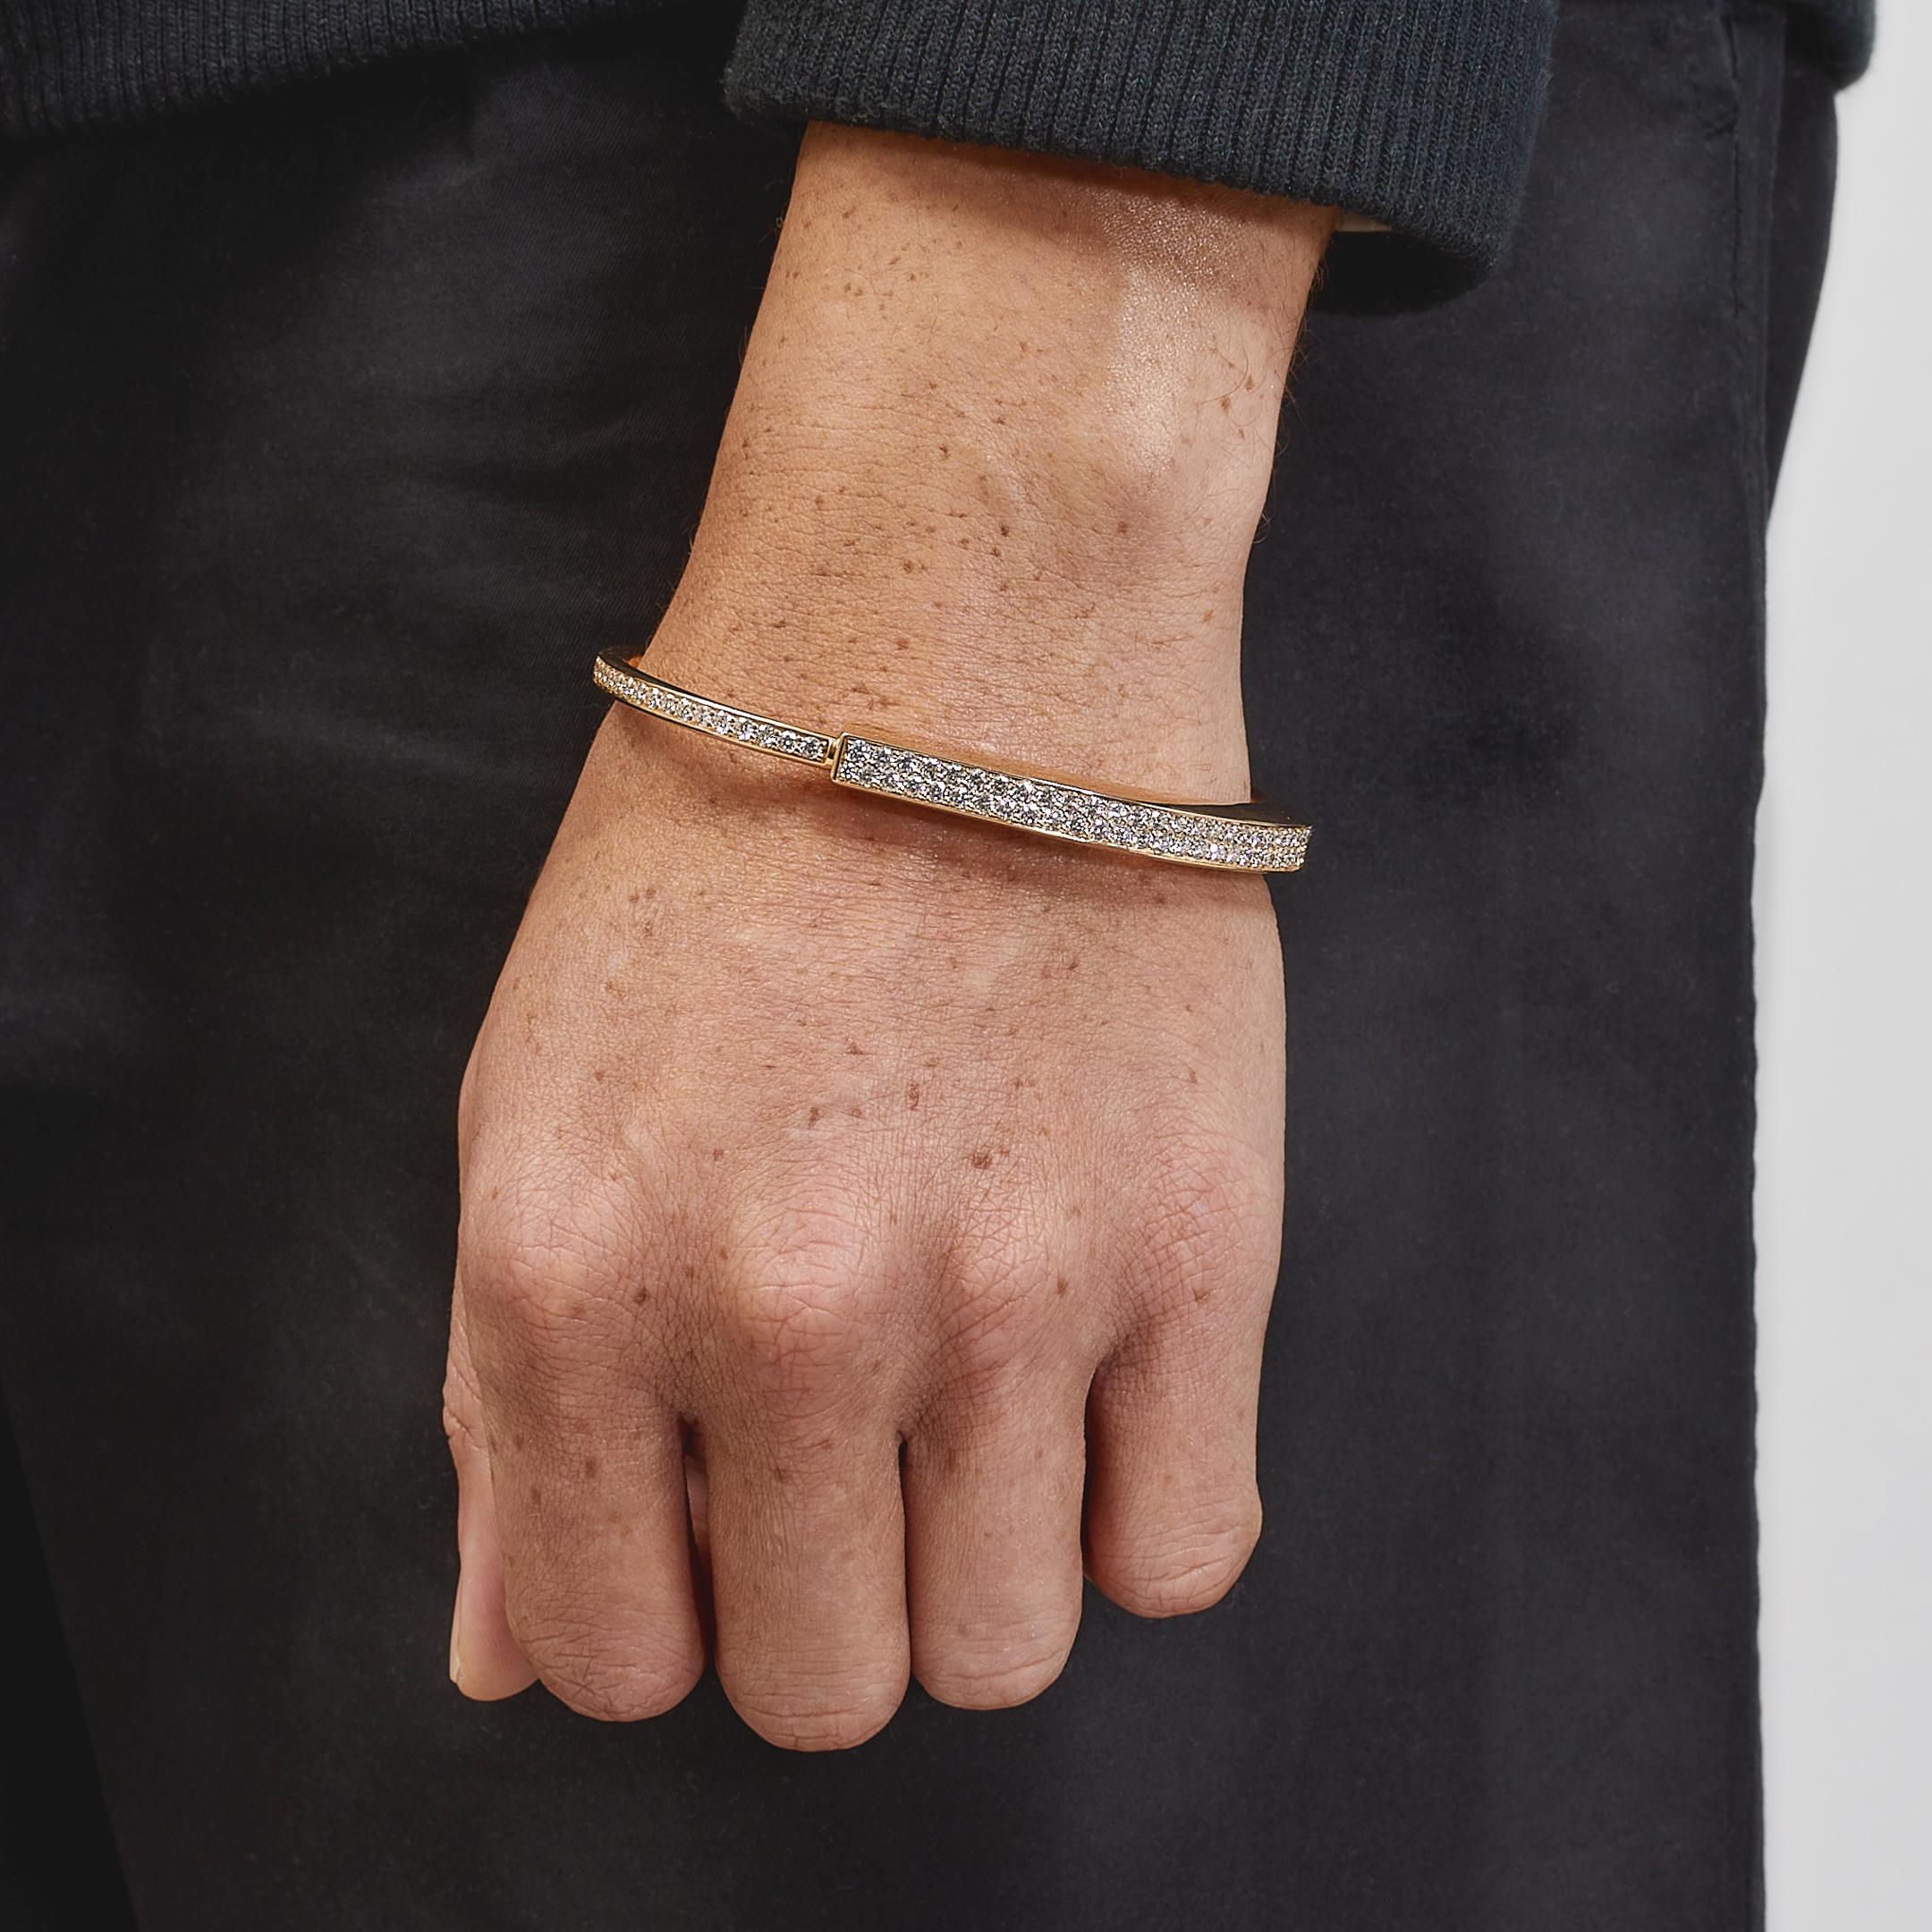 Conçu pour être porté par tous les sexes, le bracelet Lock de Tiffany & Co est une déclaration visuelle audacieuse célébrant les liens personnels. 

Réalisé en or rose et blanc 18 carats, le bracelet Tiffany Lock présente un fermoir innovant, clin